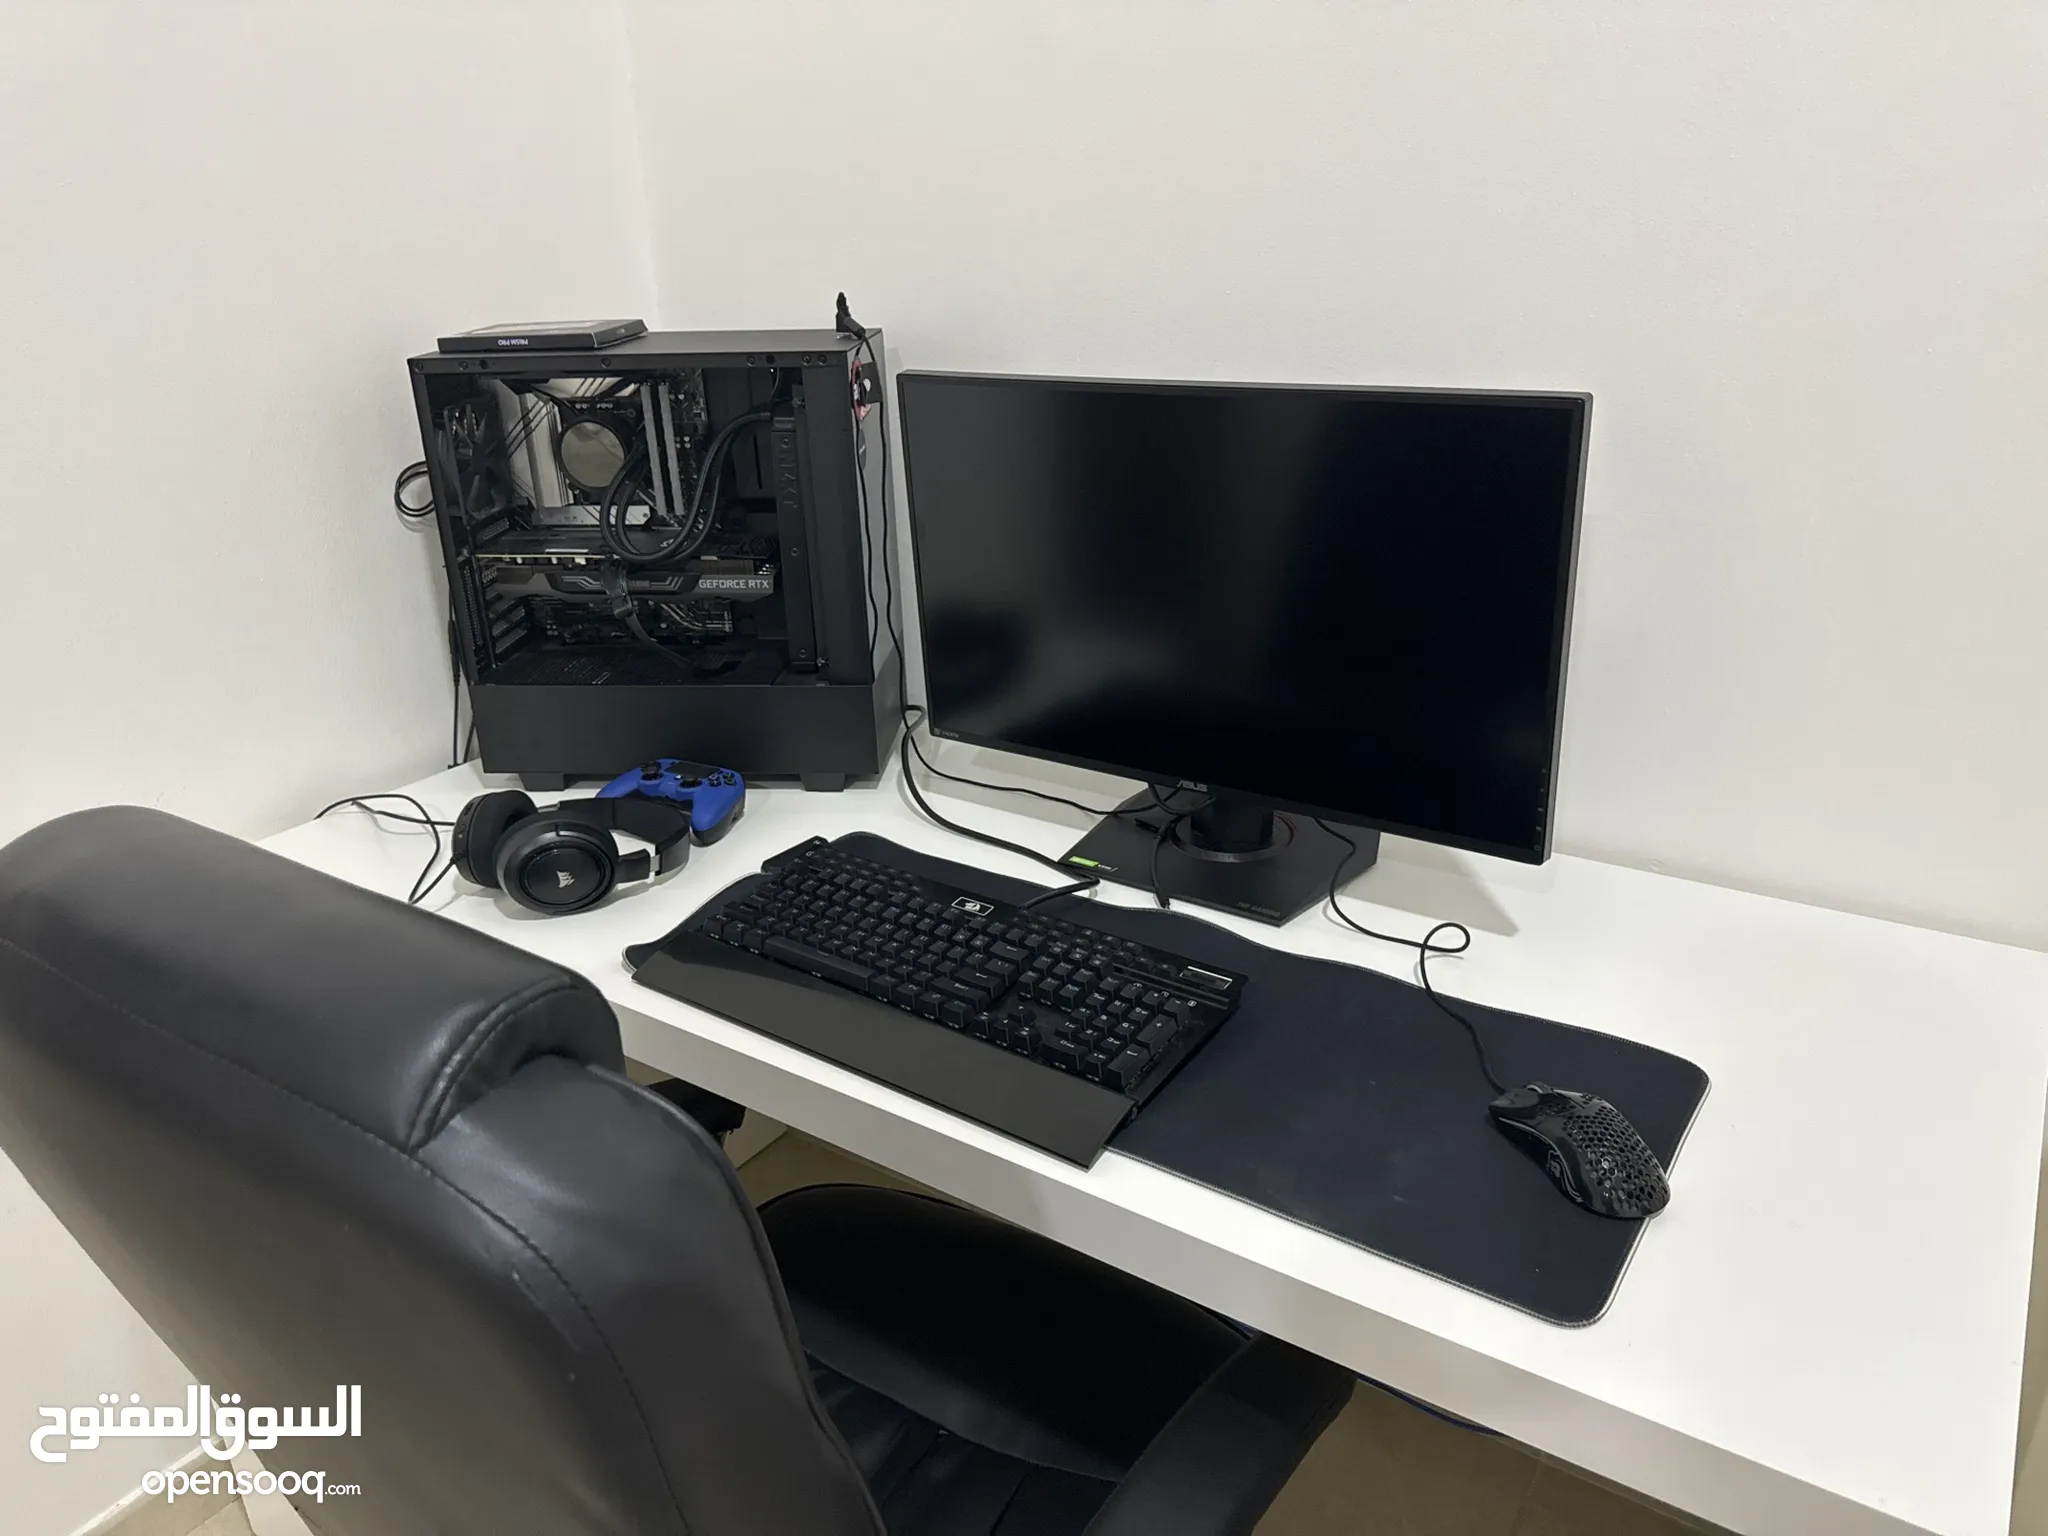 كمبيوتر للبيع في أبو ظبي : كمبيوتر مكتب : افضل سعر | السوق المفتوح